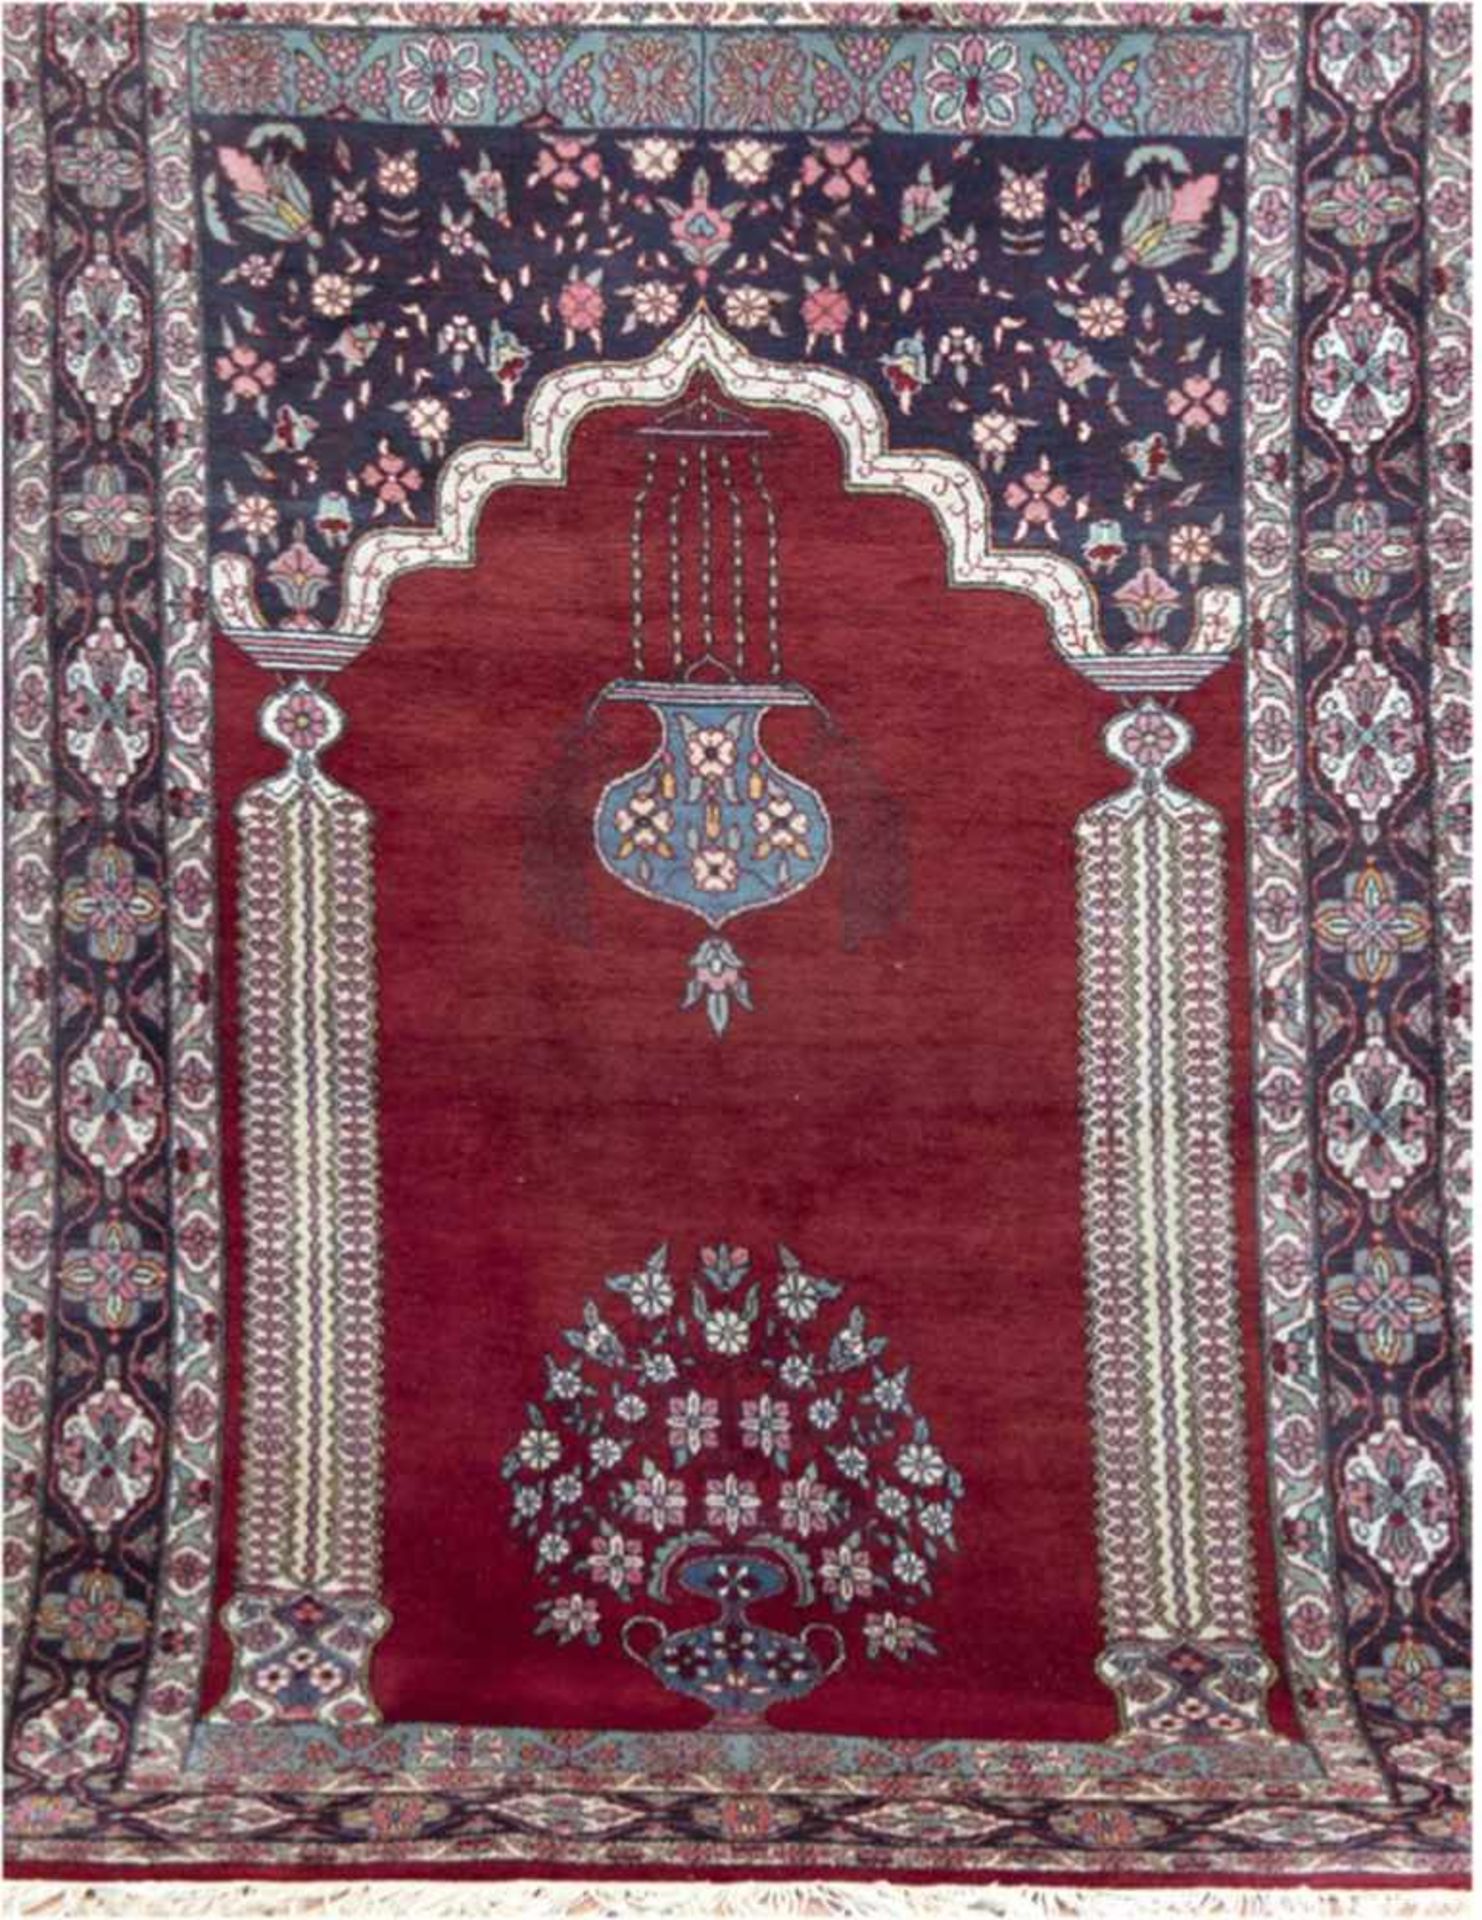 Rajasthan, Gebetsteppich, dunkelgrundig, mit zentralem Blumenbild, floralen Motiven,Fransen leicht